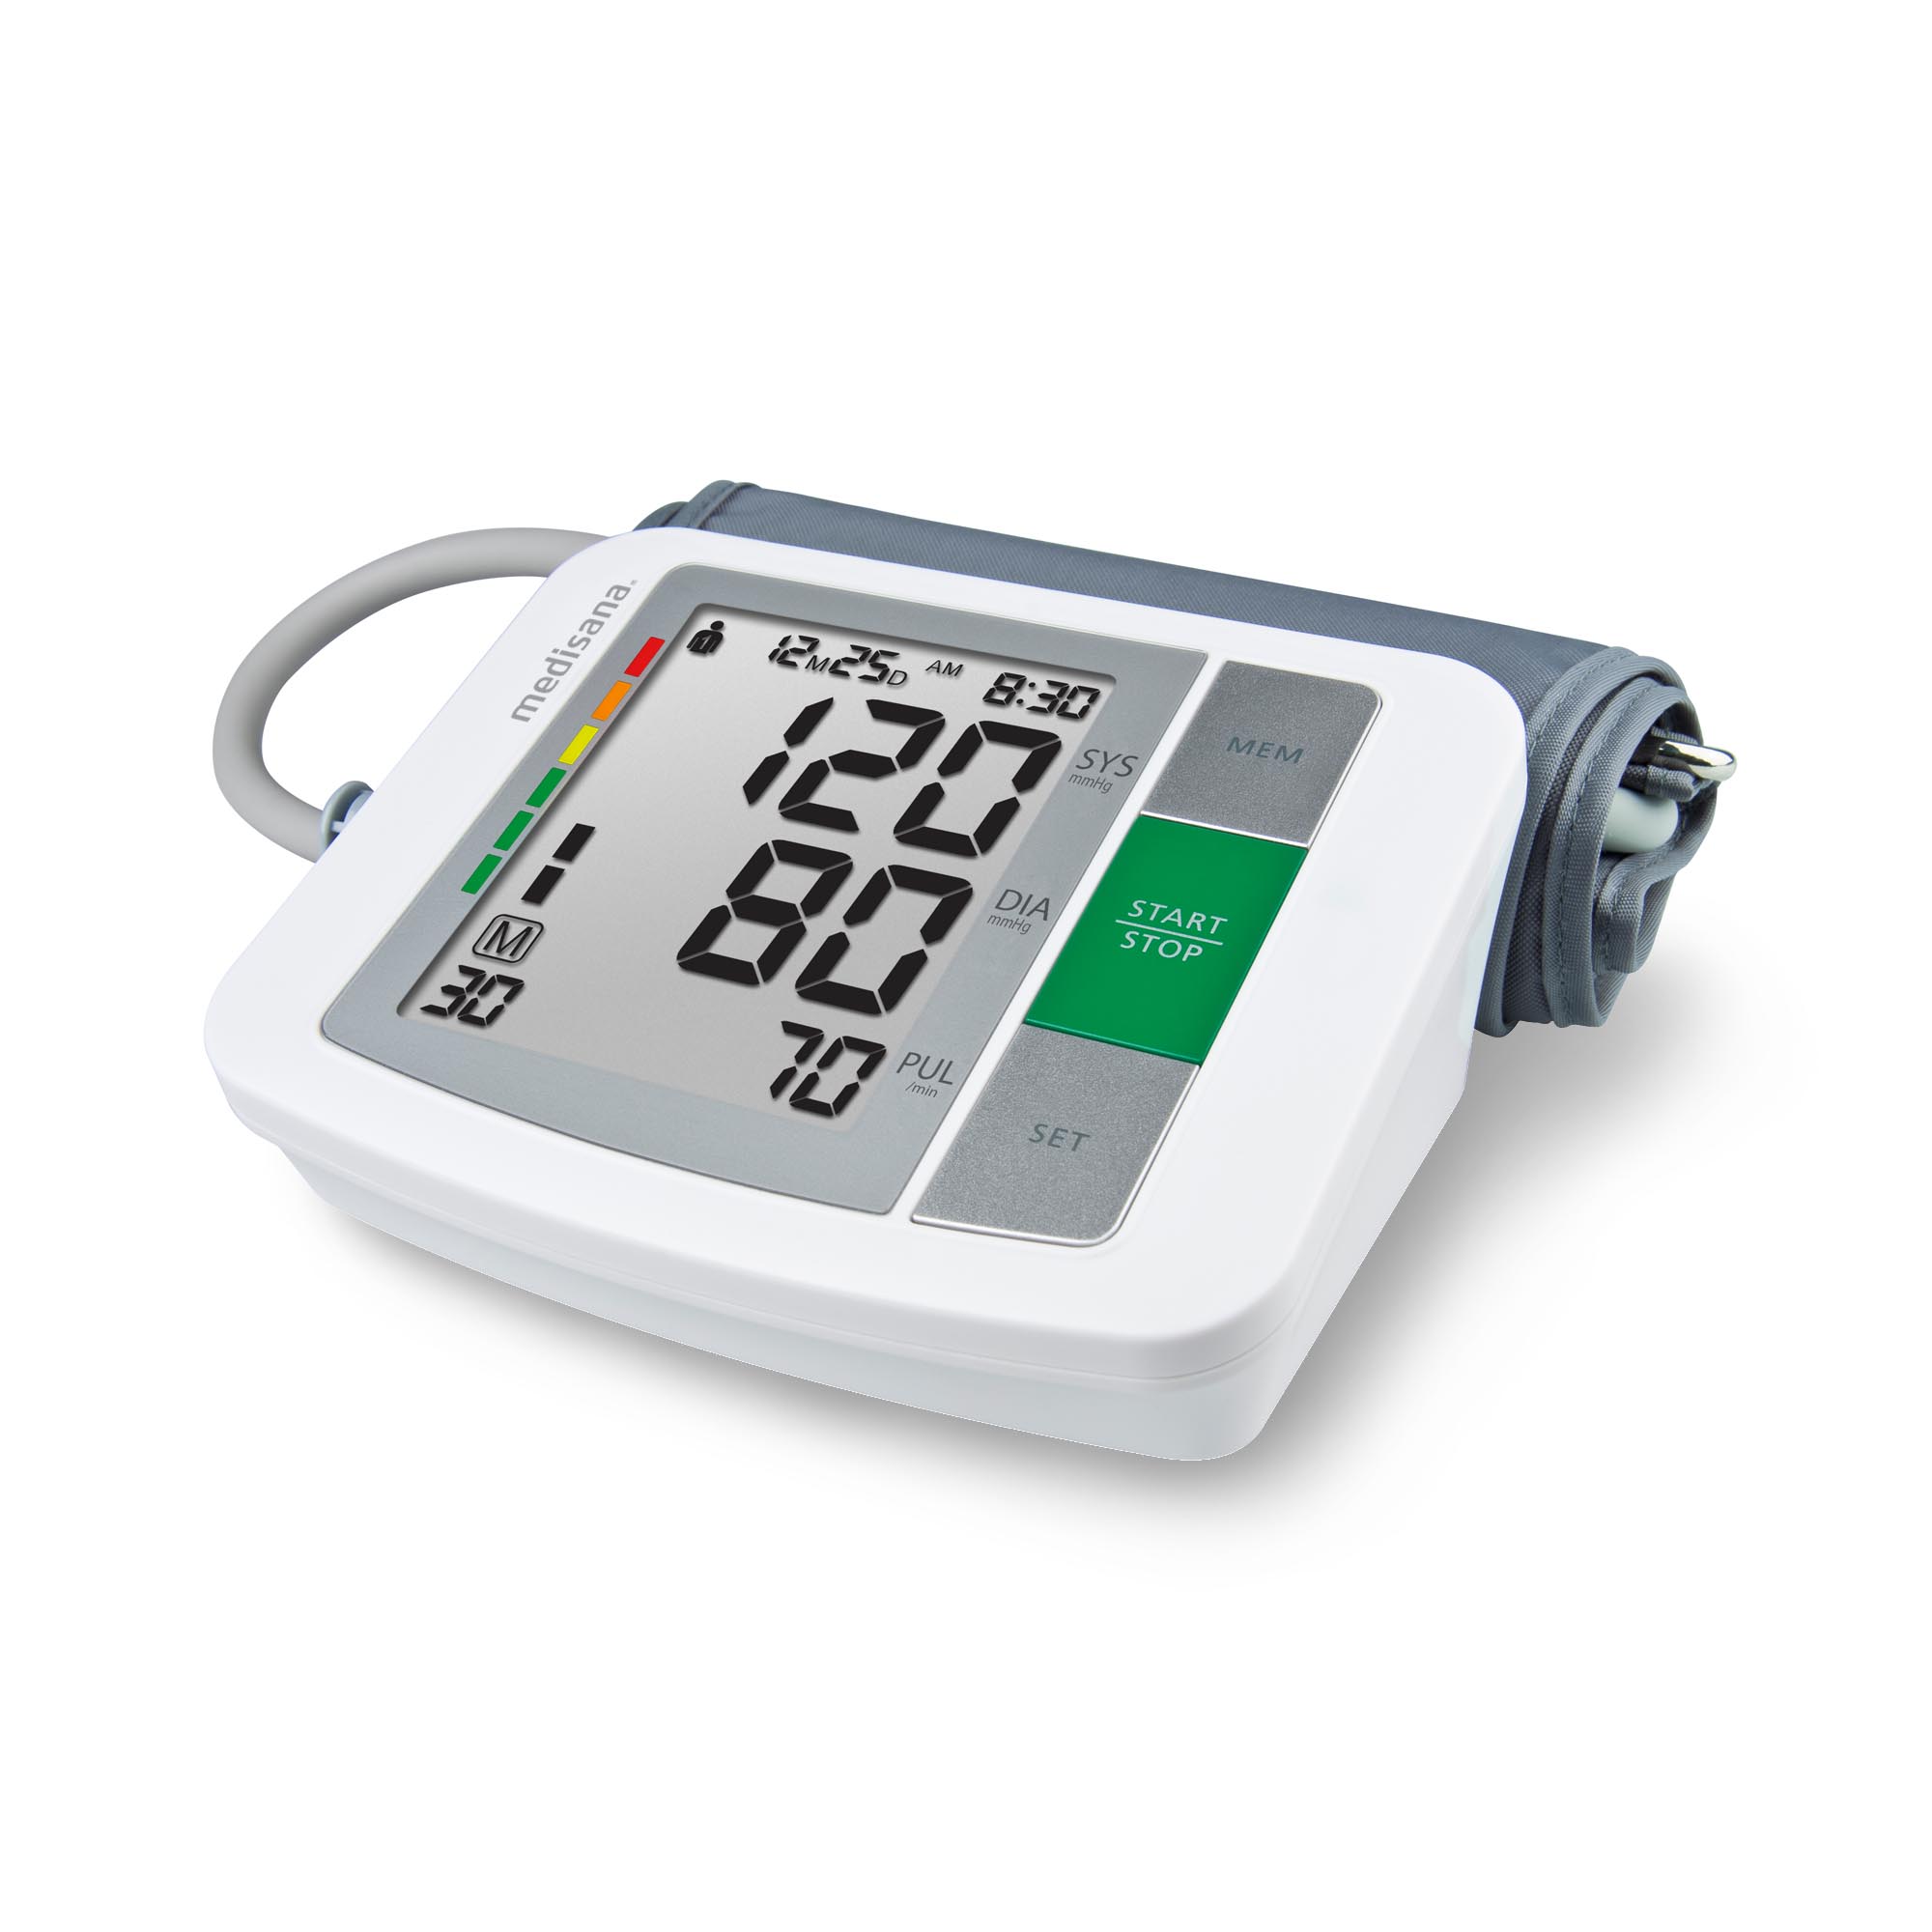 Mobiliseren Verbeelding Gecomprimeerd BU 510 Upper arm blood pressure monitor medisana®